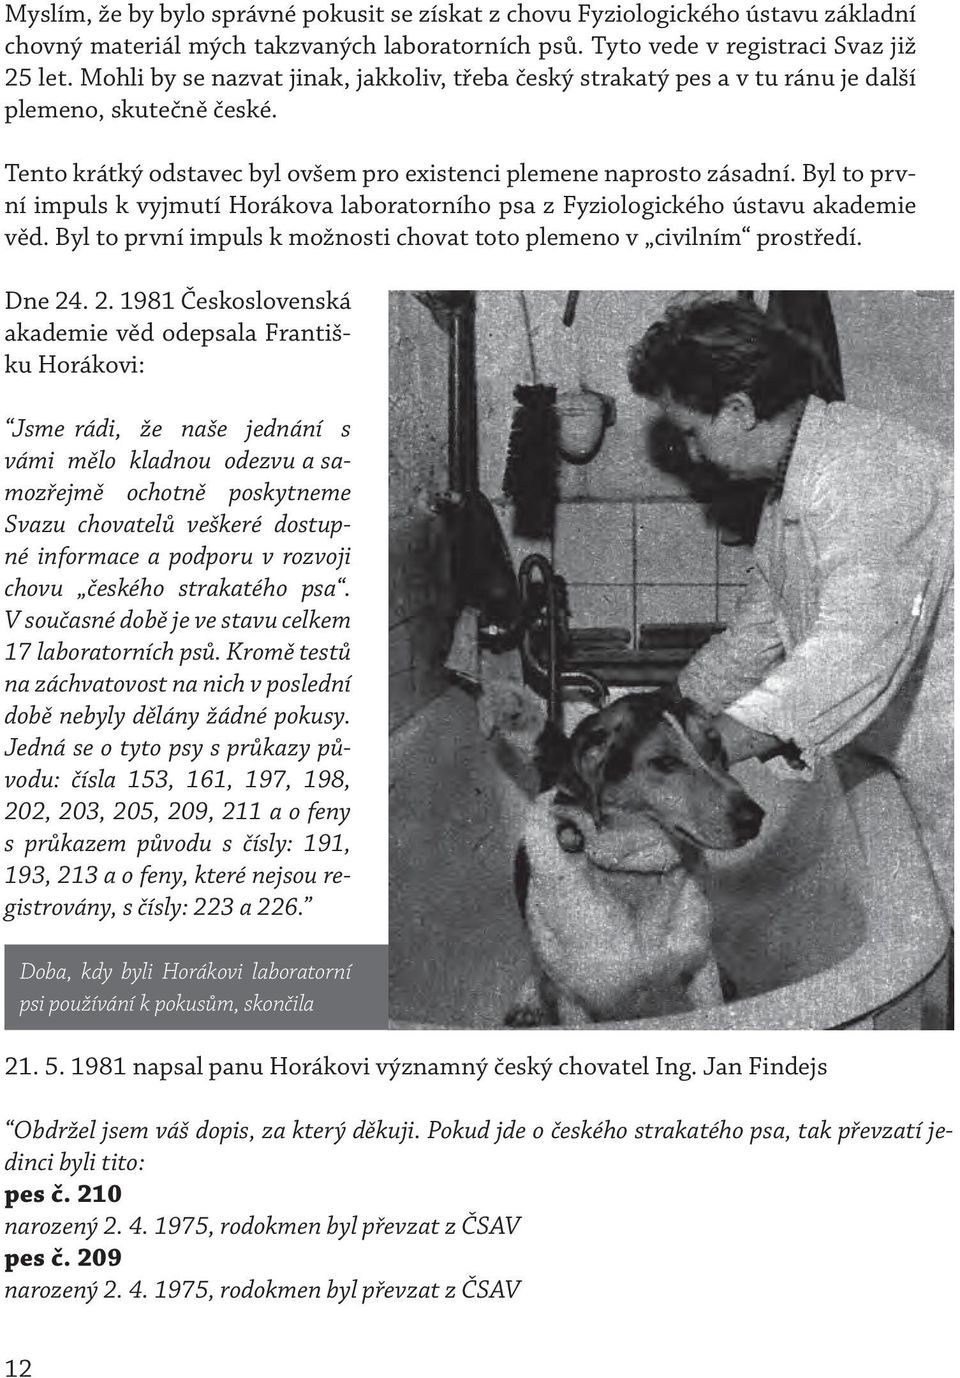 Byl to první impuls k vyjmutí Horákova laboratorního psa z Fyziologického ústavu akademie věd. Byl to první impuls k možnosti chovat toto plemeno v civilním prostředí. Dne 24